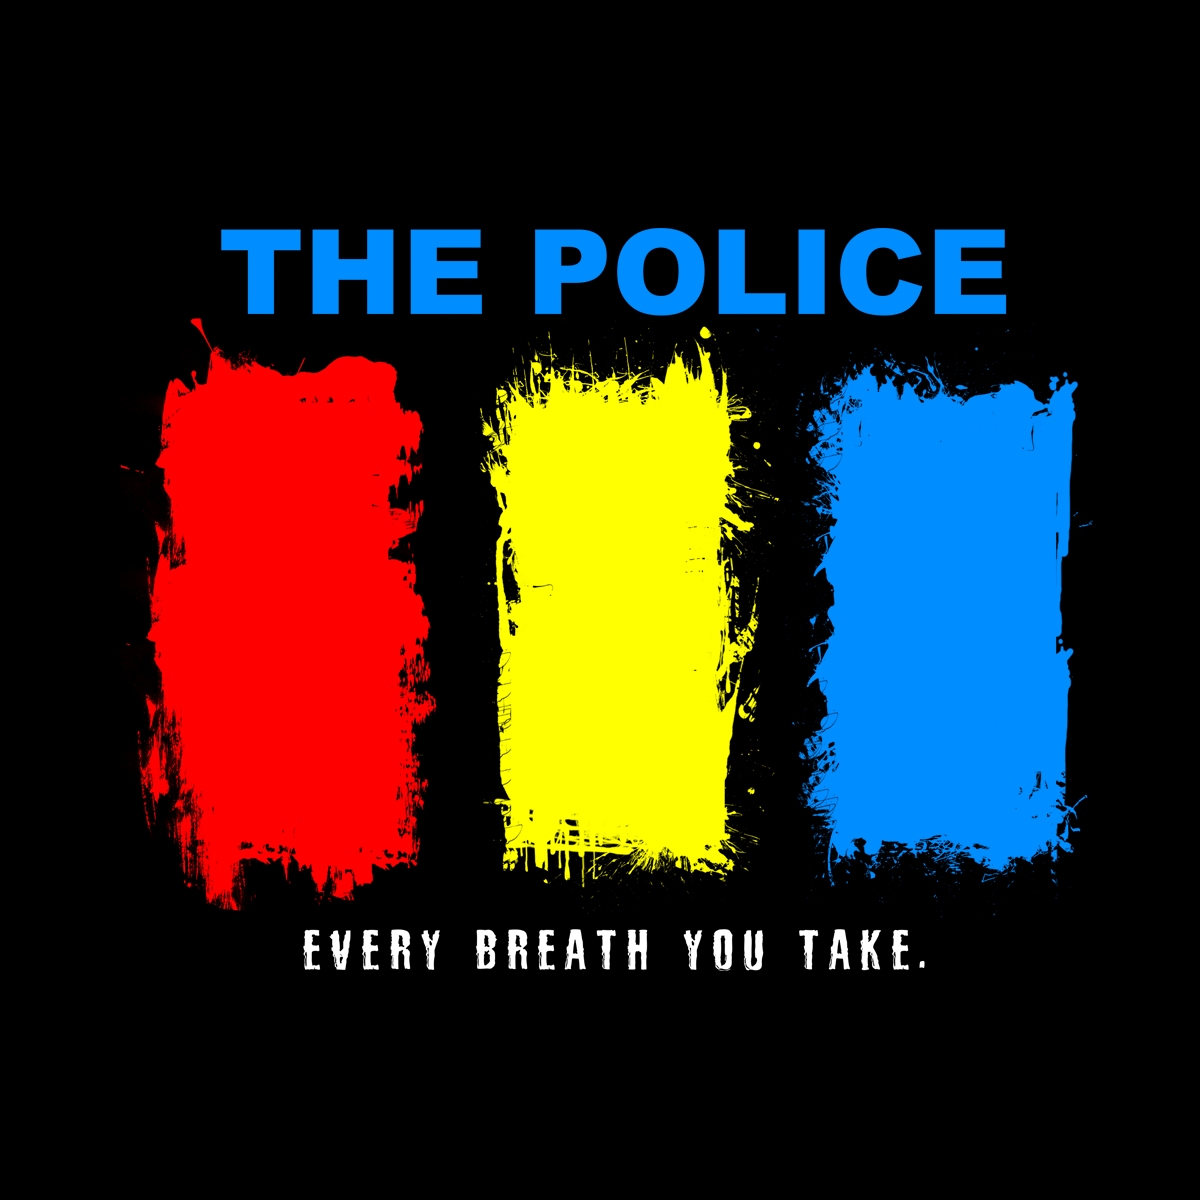 Camiseta The Police